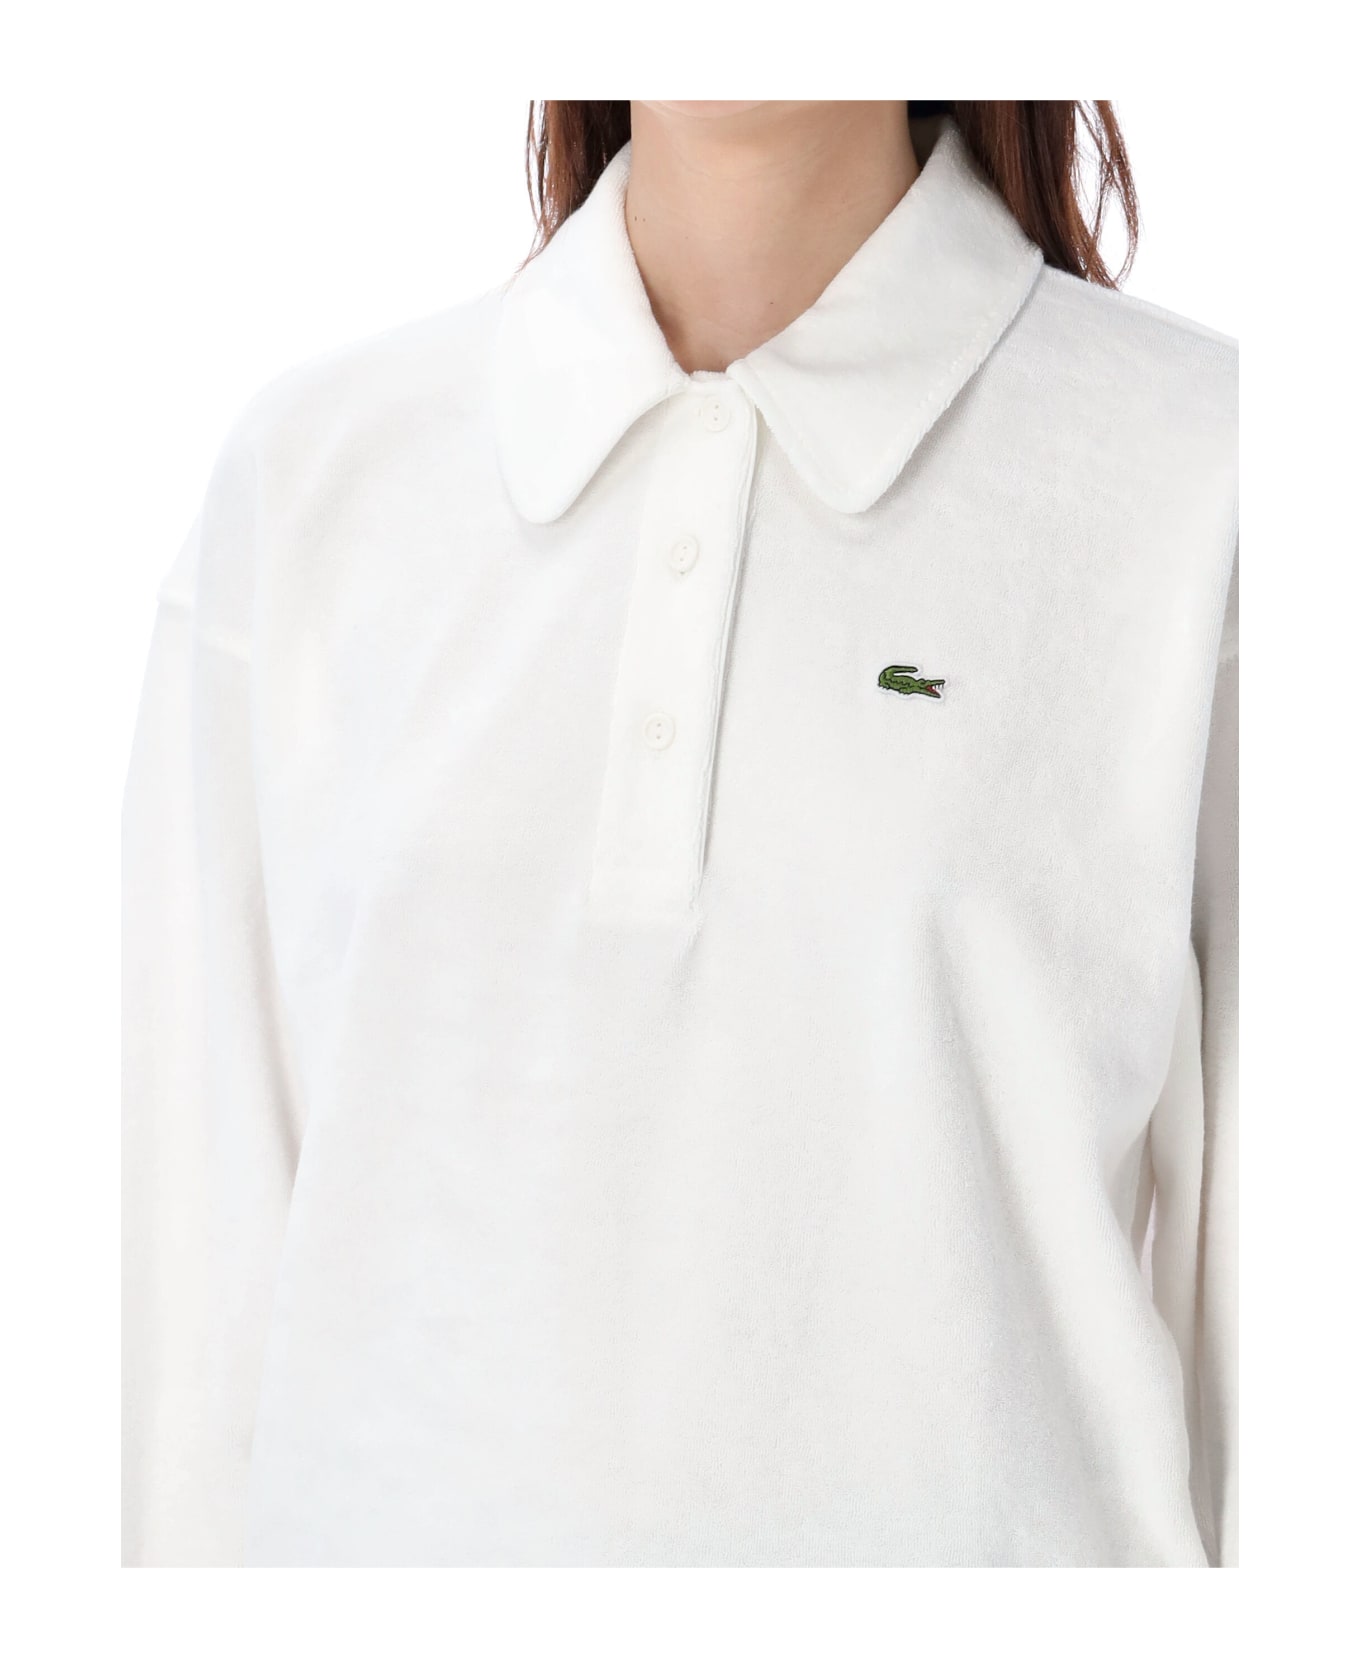 Lacoste Terry Polo Shirt - WHITE